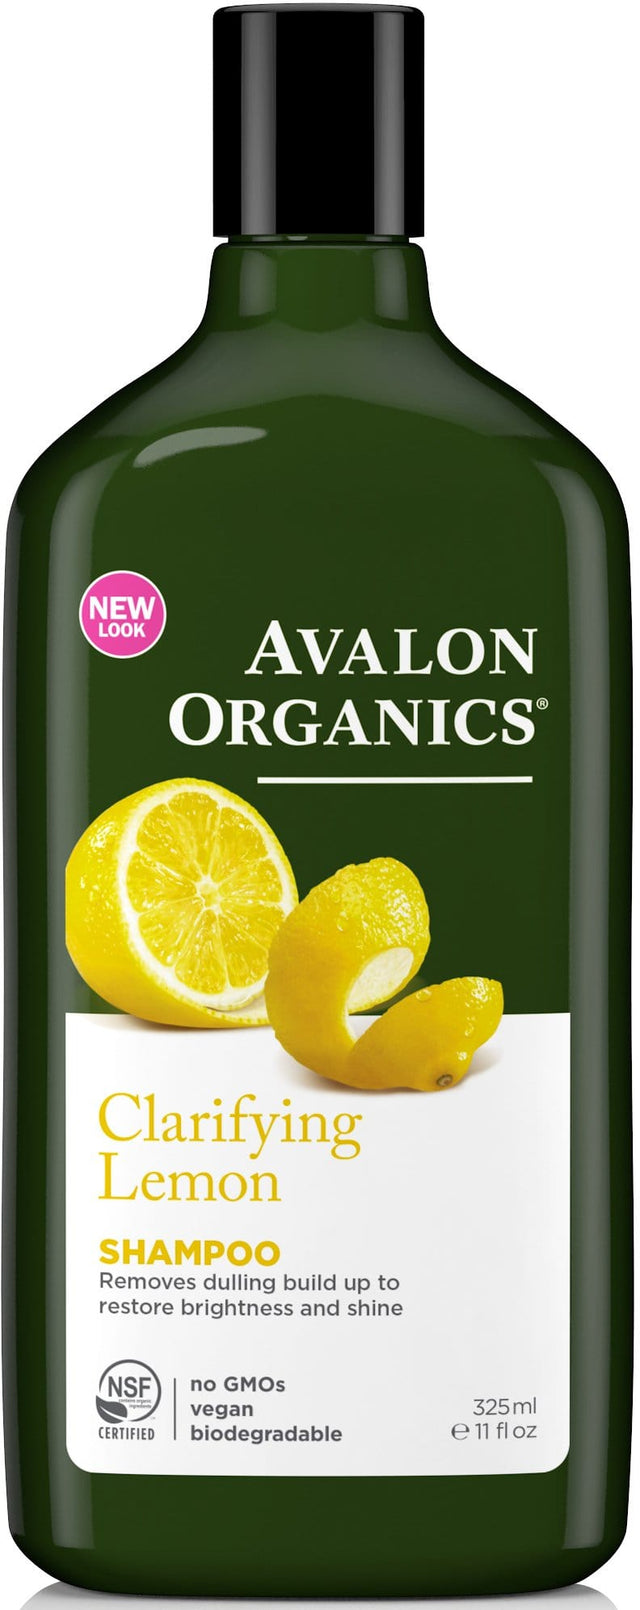 Avalon Organics Lemon Shampoo, 325ml